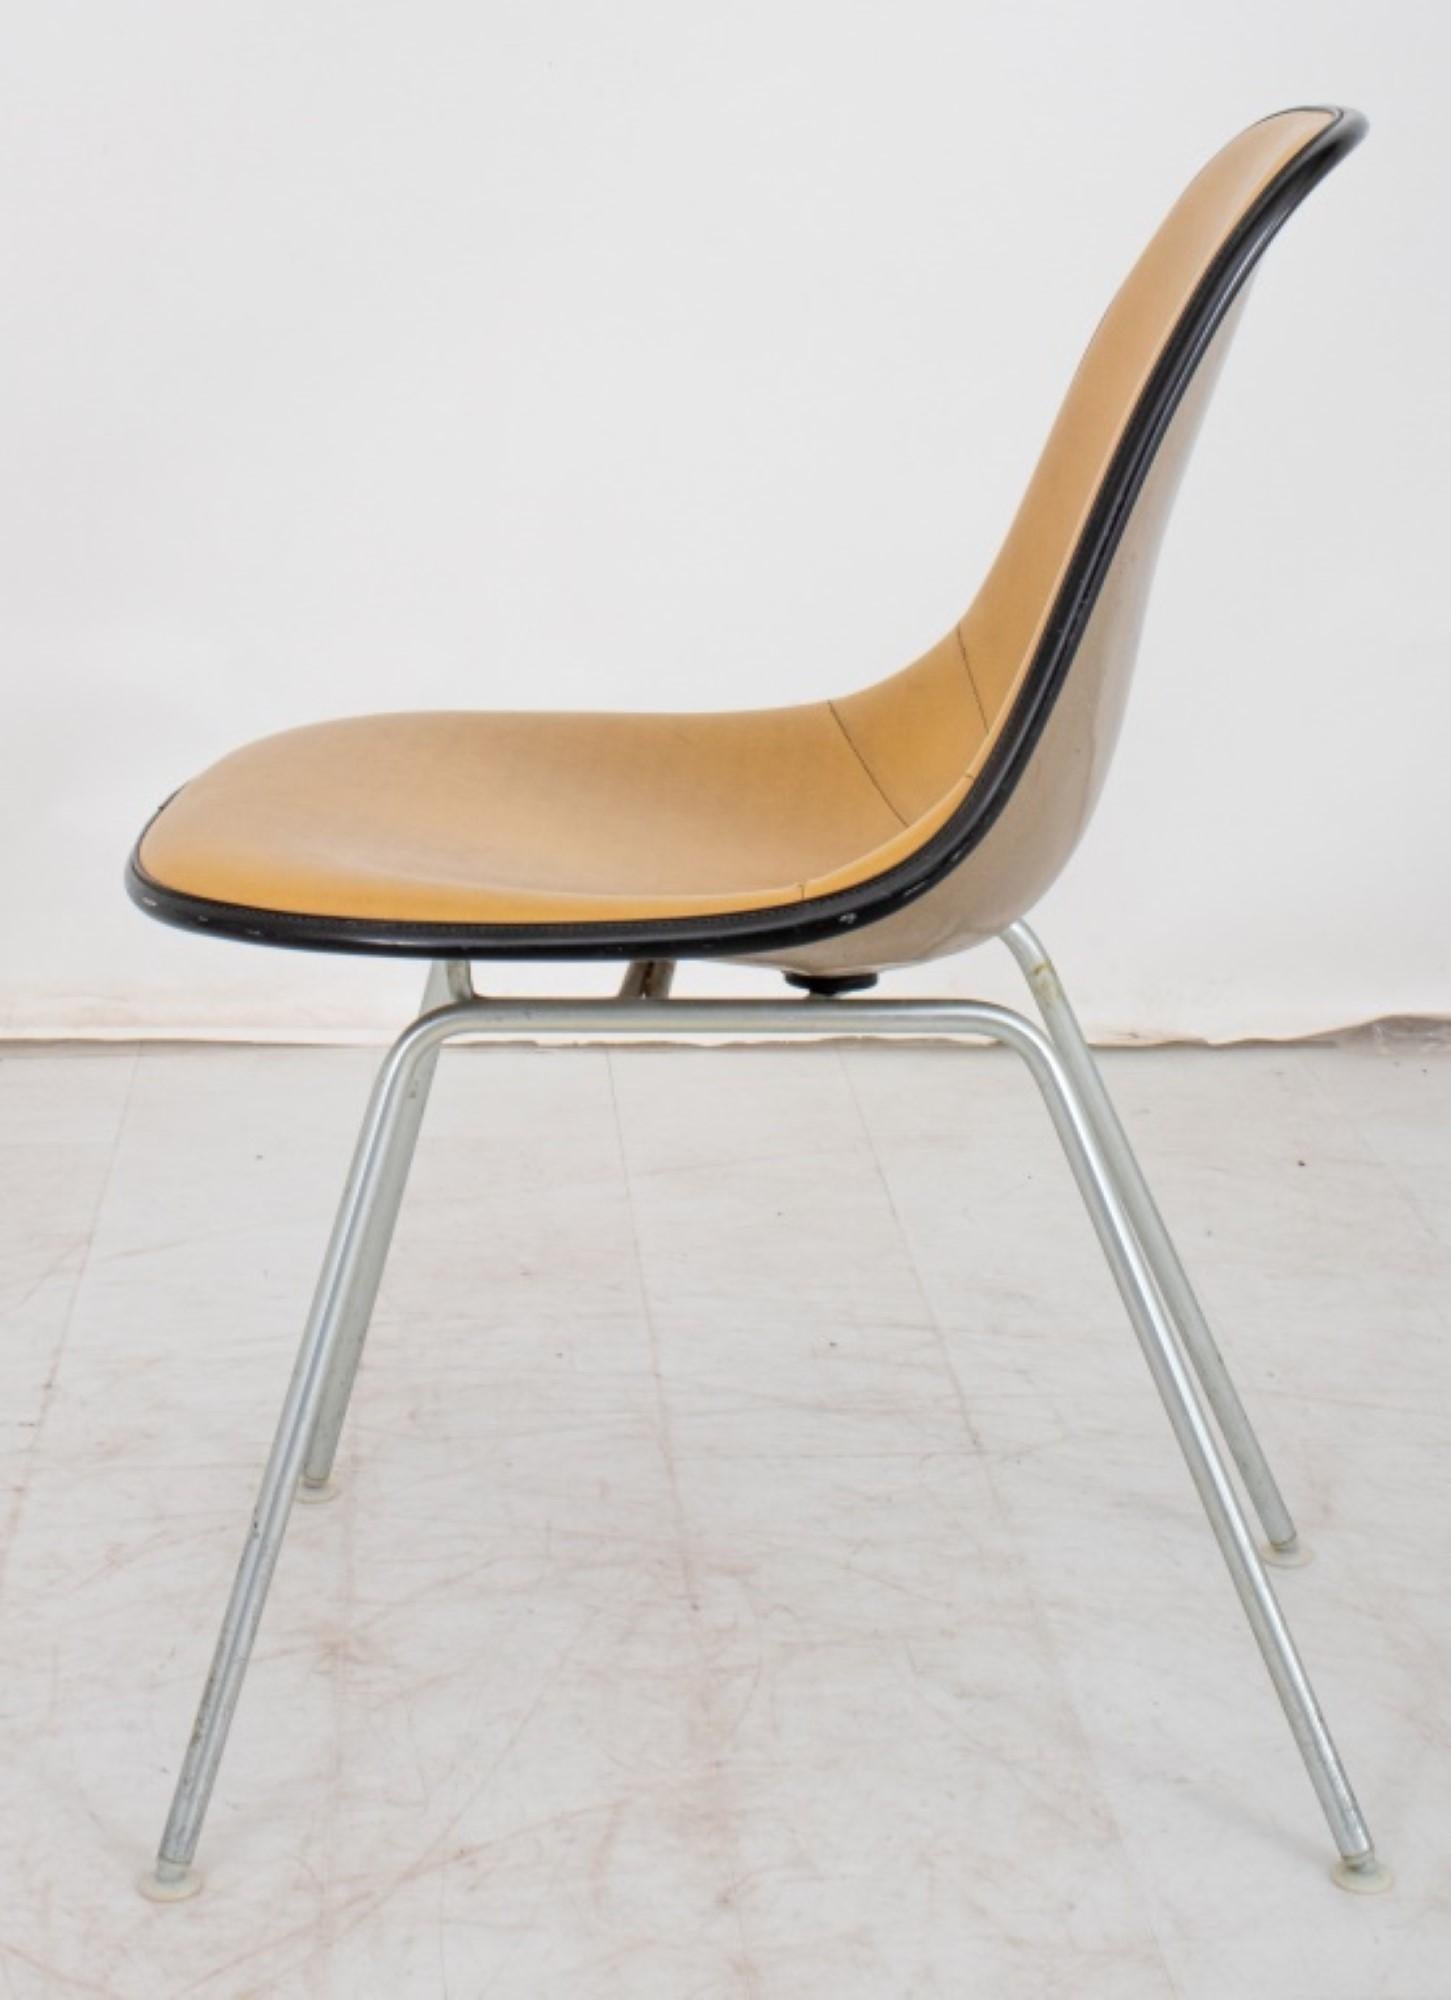 Sièges iconiques : Chaise rembourrée de Ray et Charles Eames pour Herman Miller

Possédez un morceau de l'histoire du design avec cette chaise emblématique de la modernité du milieu du siècle, conçue par le légendaire duo Ray et Charles Eames pour